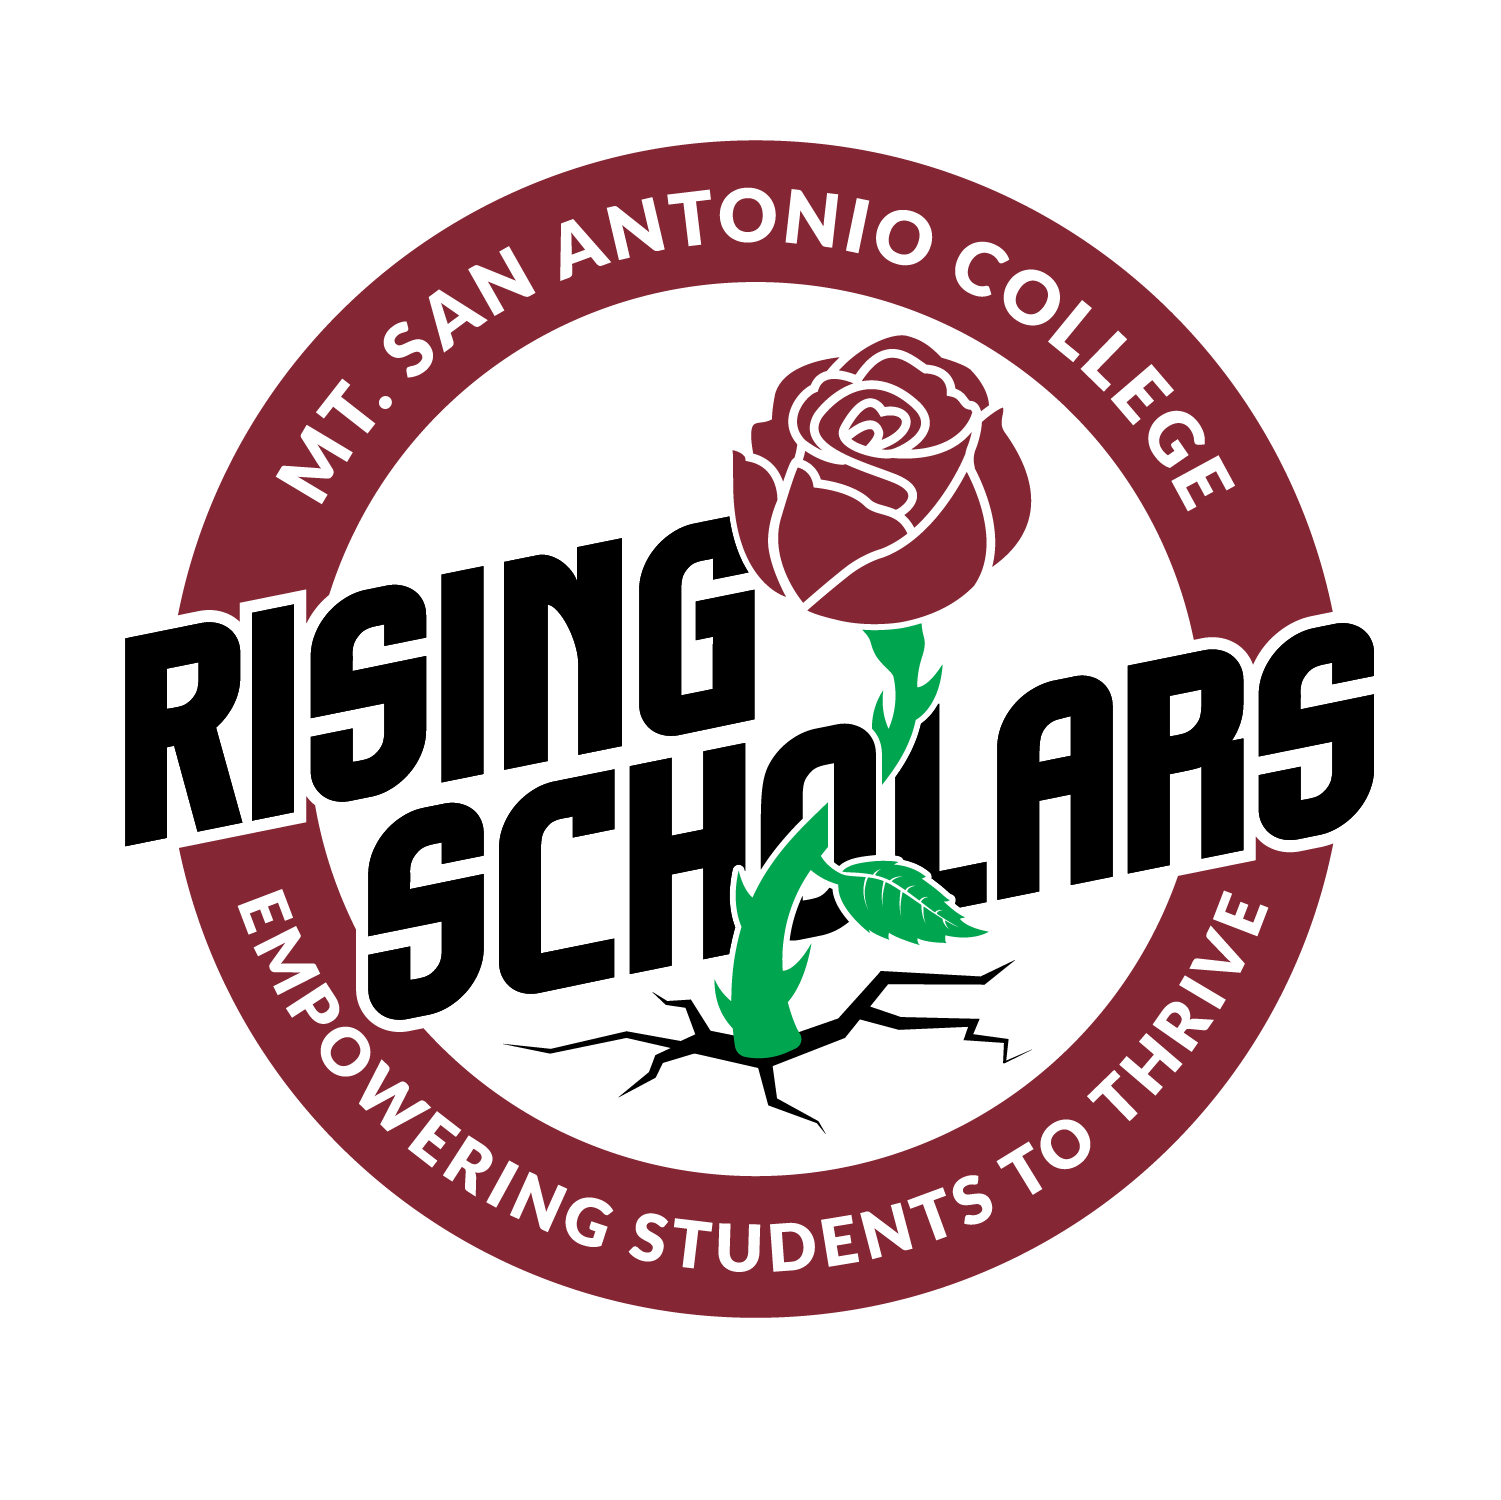 Rising Scholars